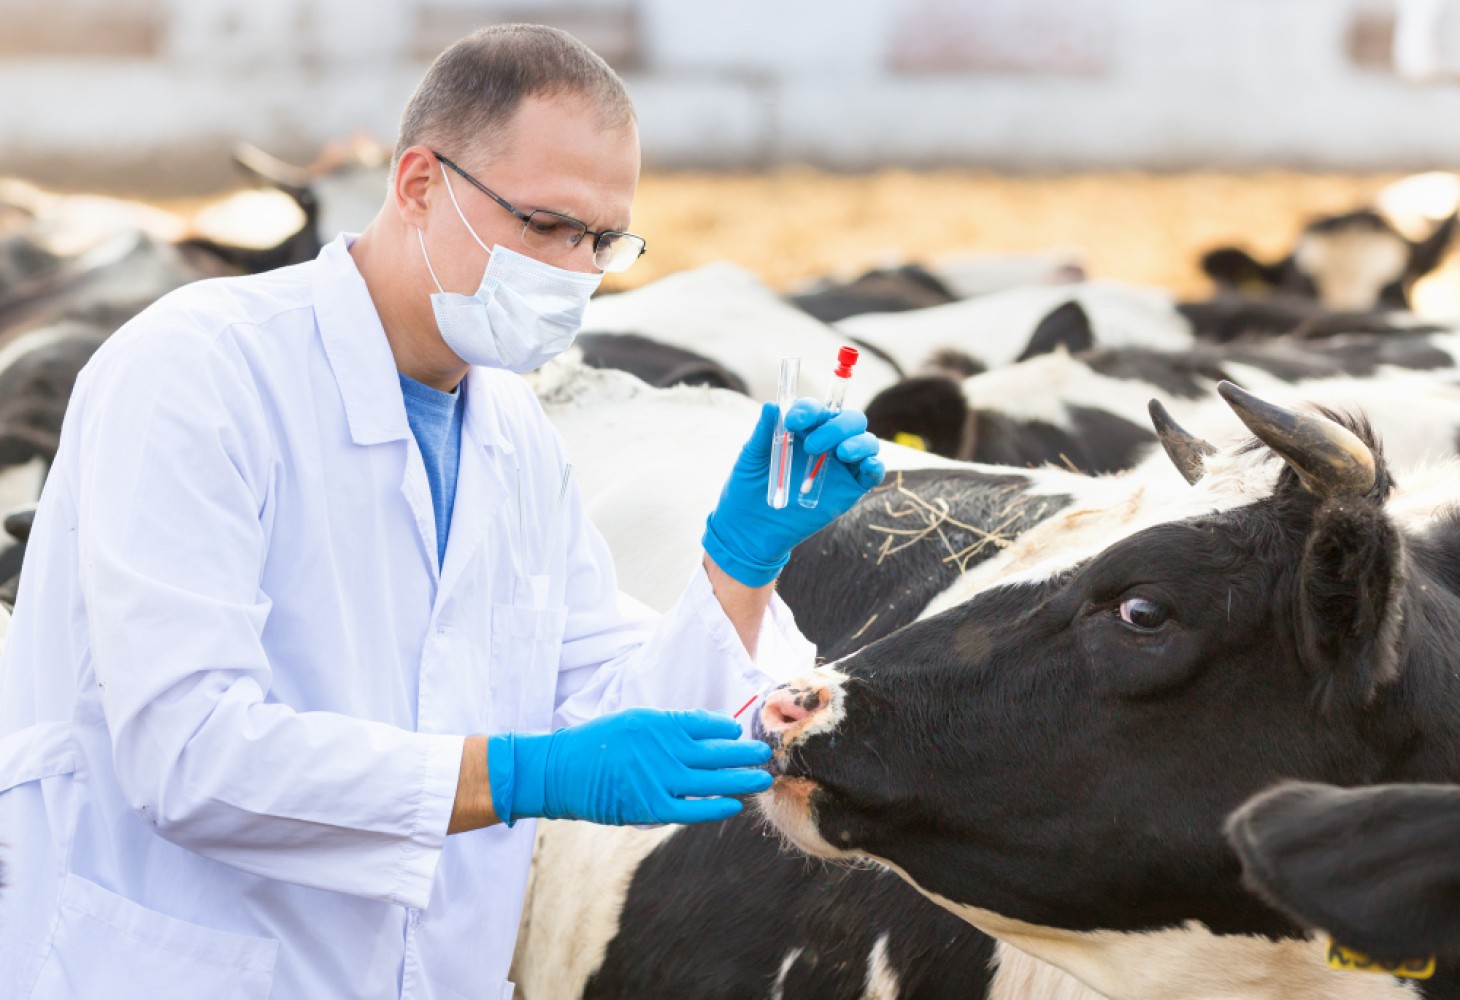 В статье рассматриваются ключевые аспекты здравоохранения и профилактики заболеваний среди коров в стране. Описываются диагностика, вакцинация, и обучение специалистов в области ветеринарии для повышения эффективности и производительности сельского хозяйства.